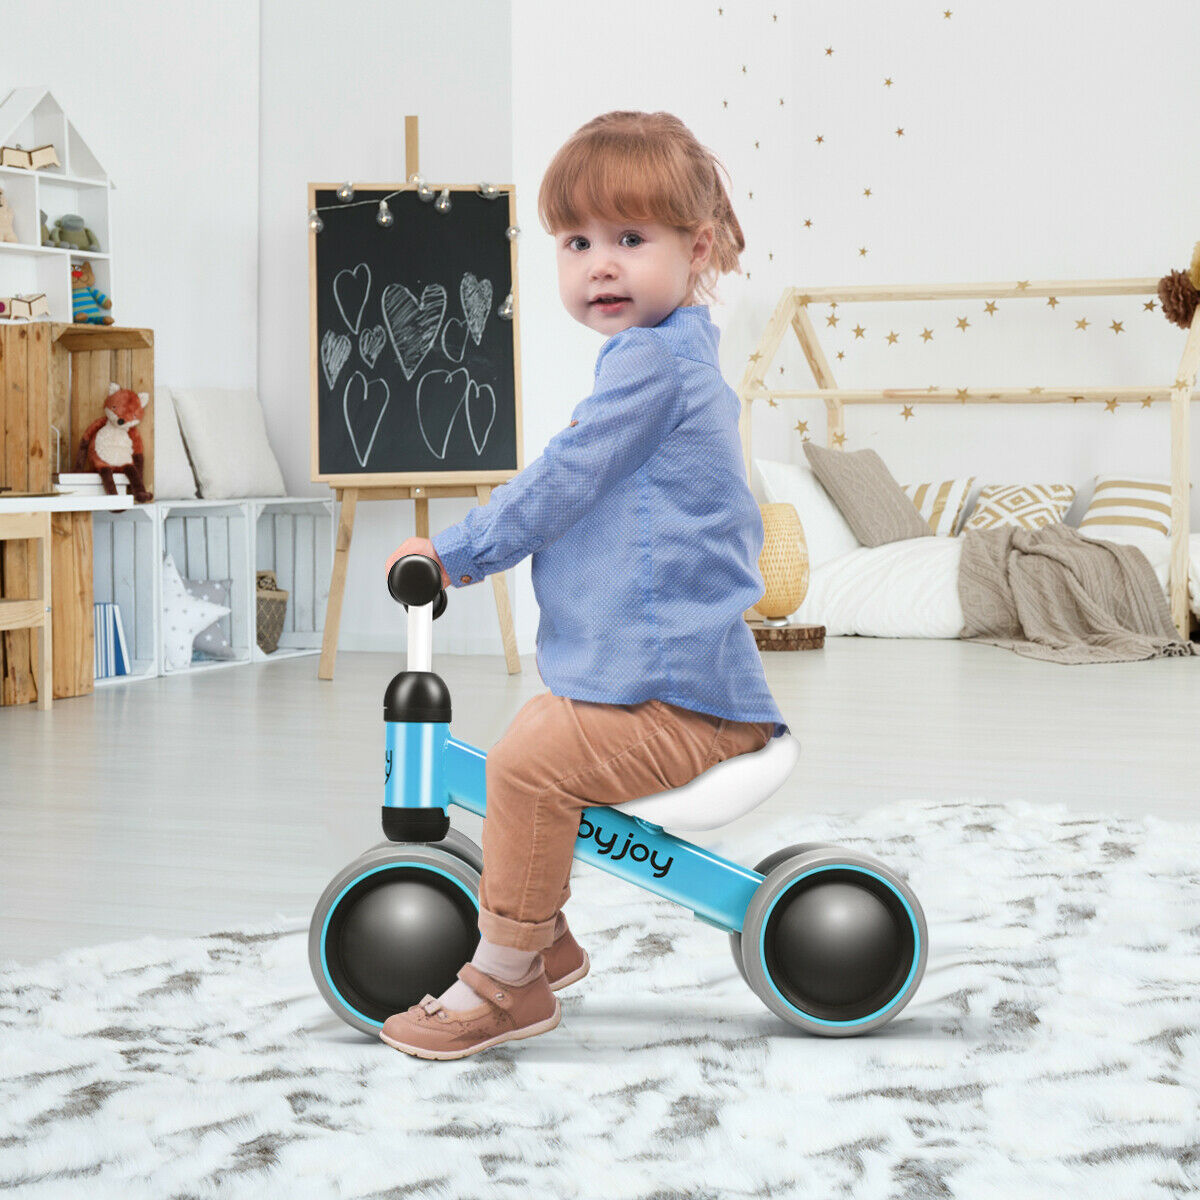 Babyjoy 4 Wheels Baby Balance Bike Children Walker No-Pedal Toddler Toys Rides Blue - image 3 of 10